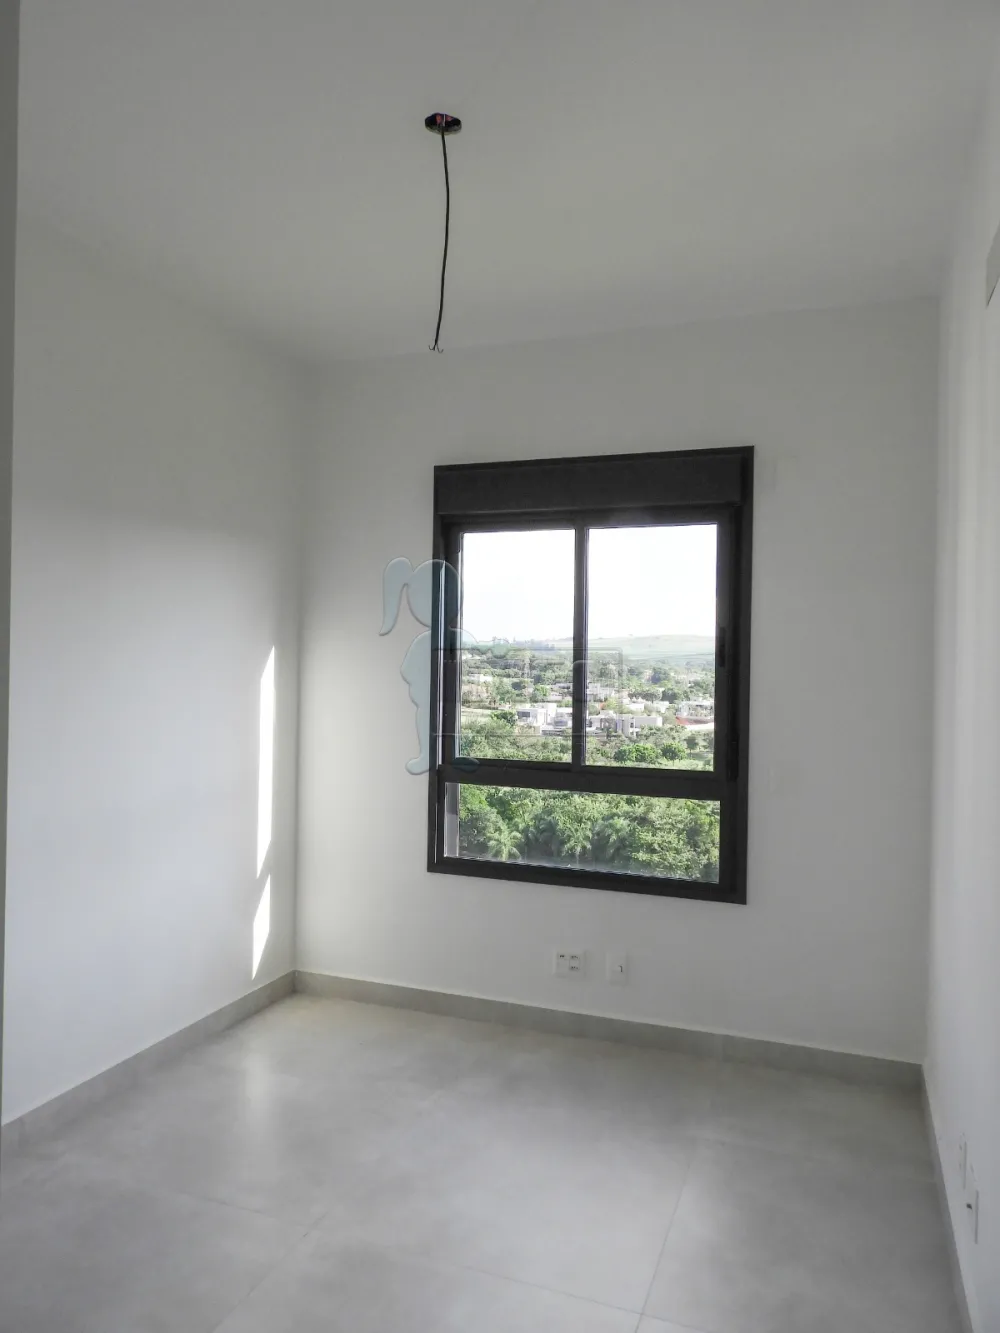 Comprar Apartamento / Padrão em Ribeirão Preto R$ 1.650.000,00 - Foto 15